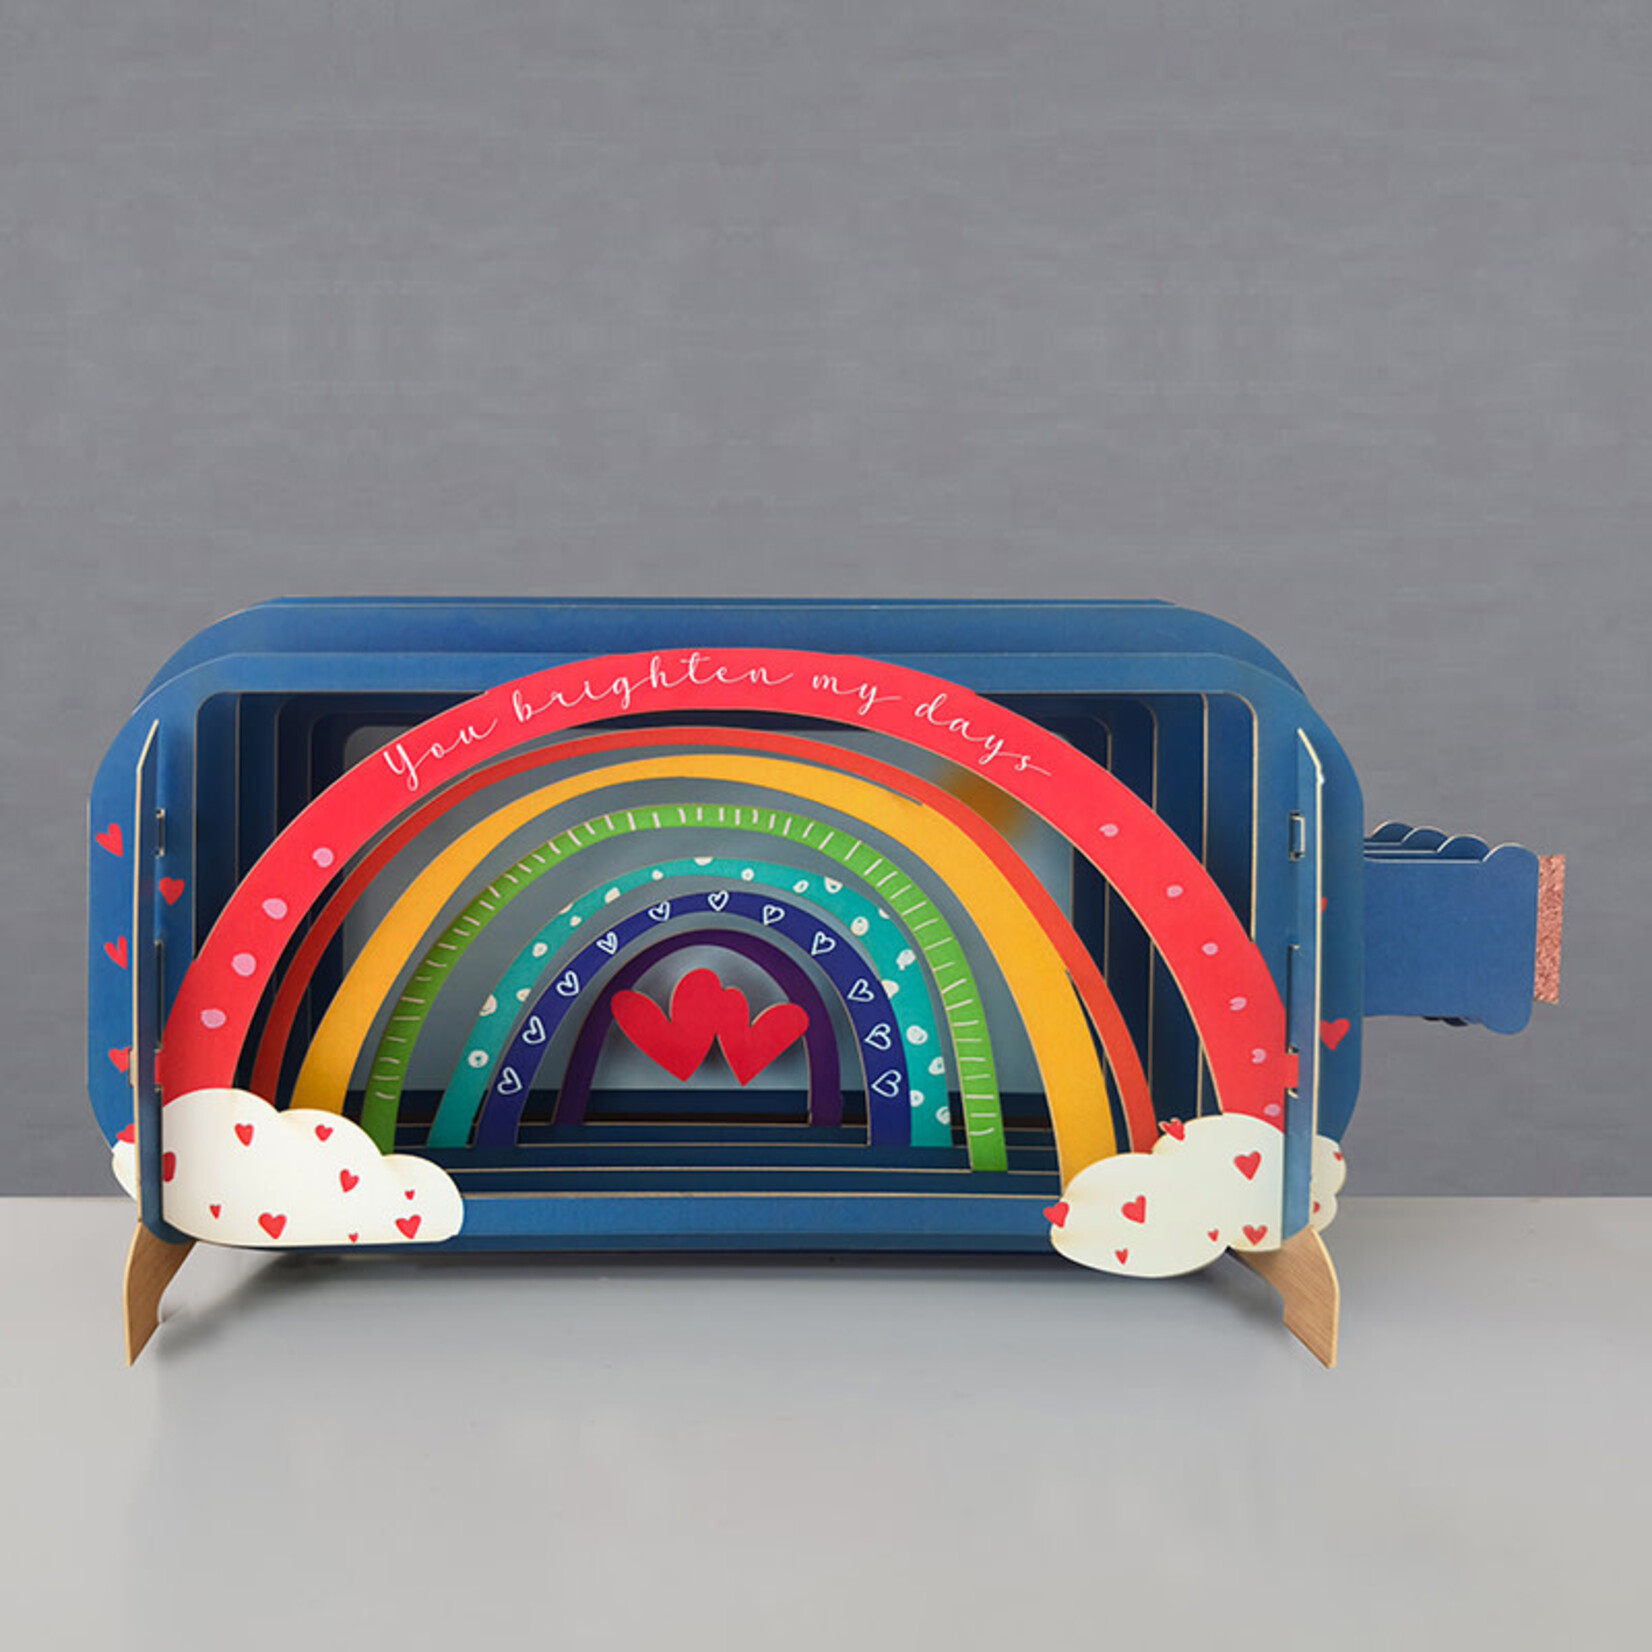 AllJoy Design You Brighten My Days Rainbow 3D Bottle Card